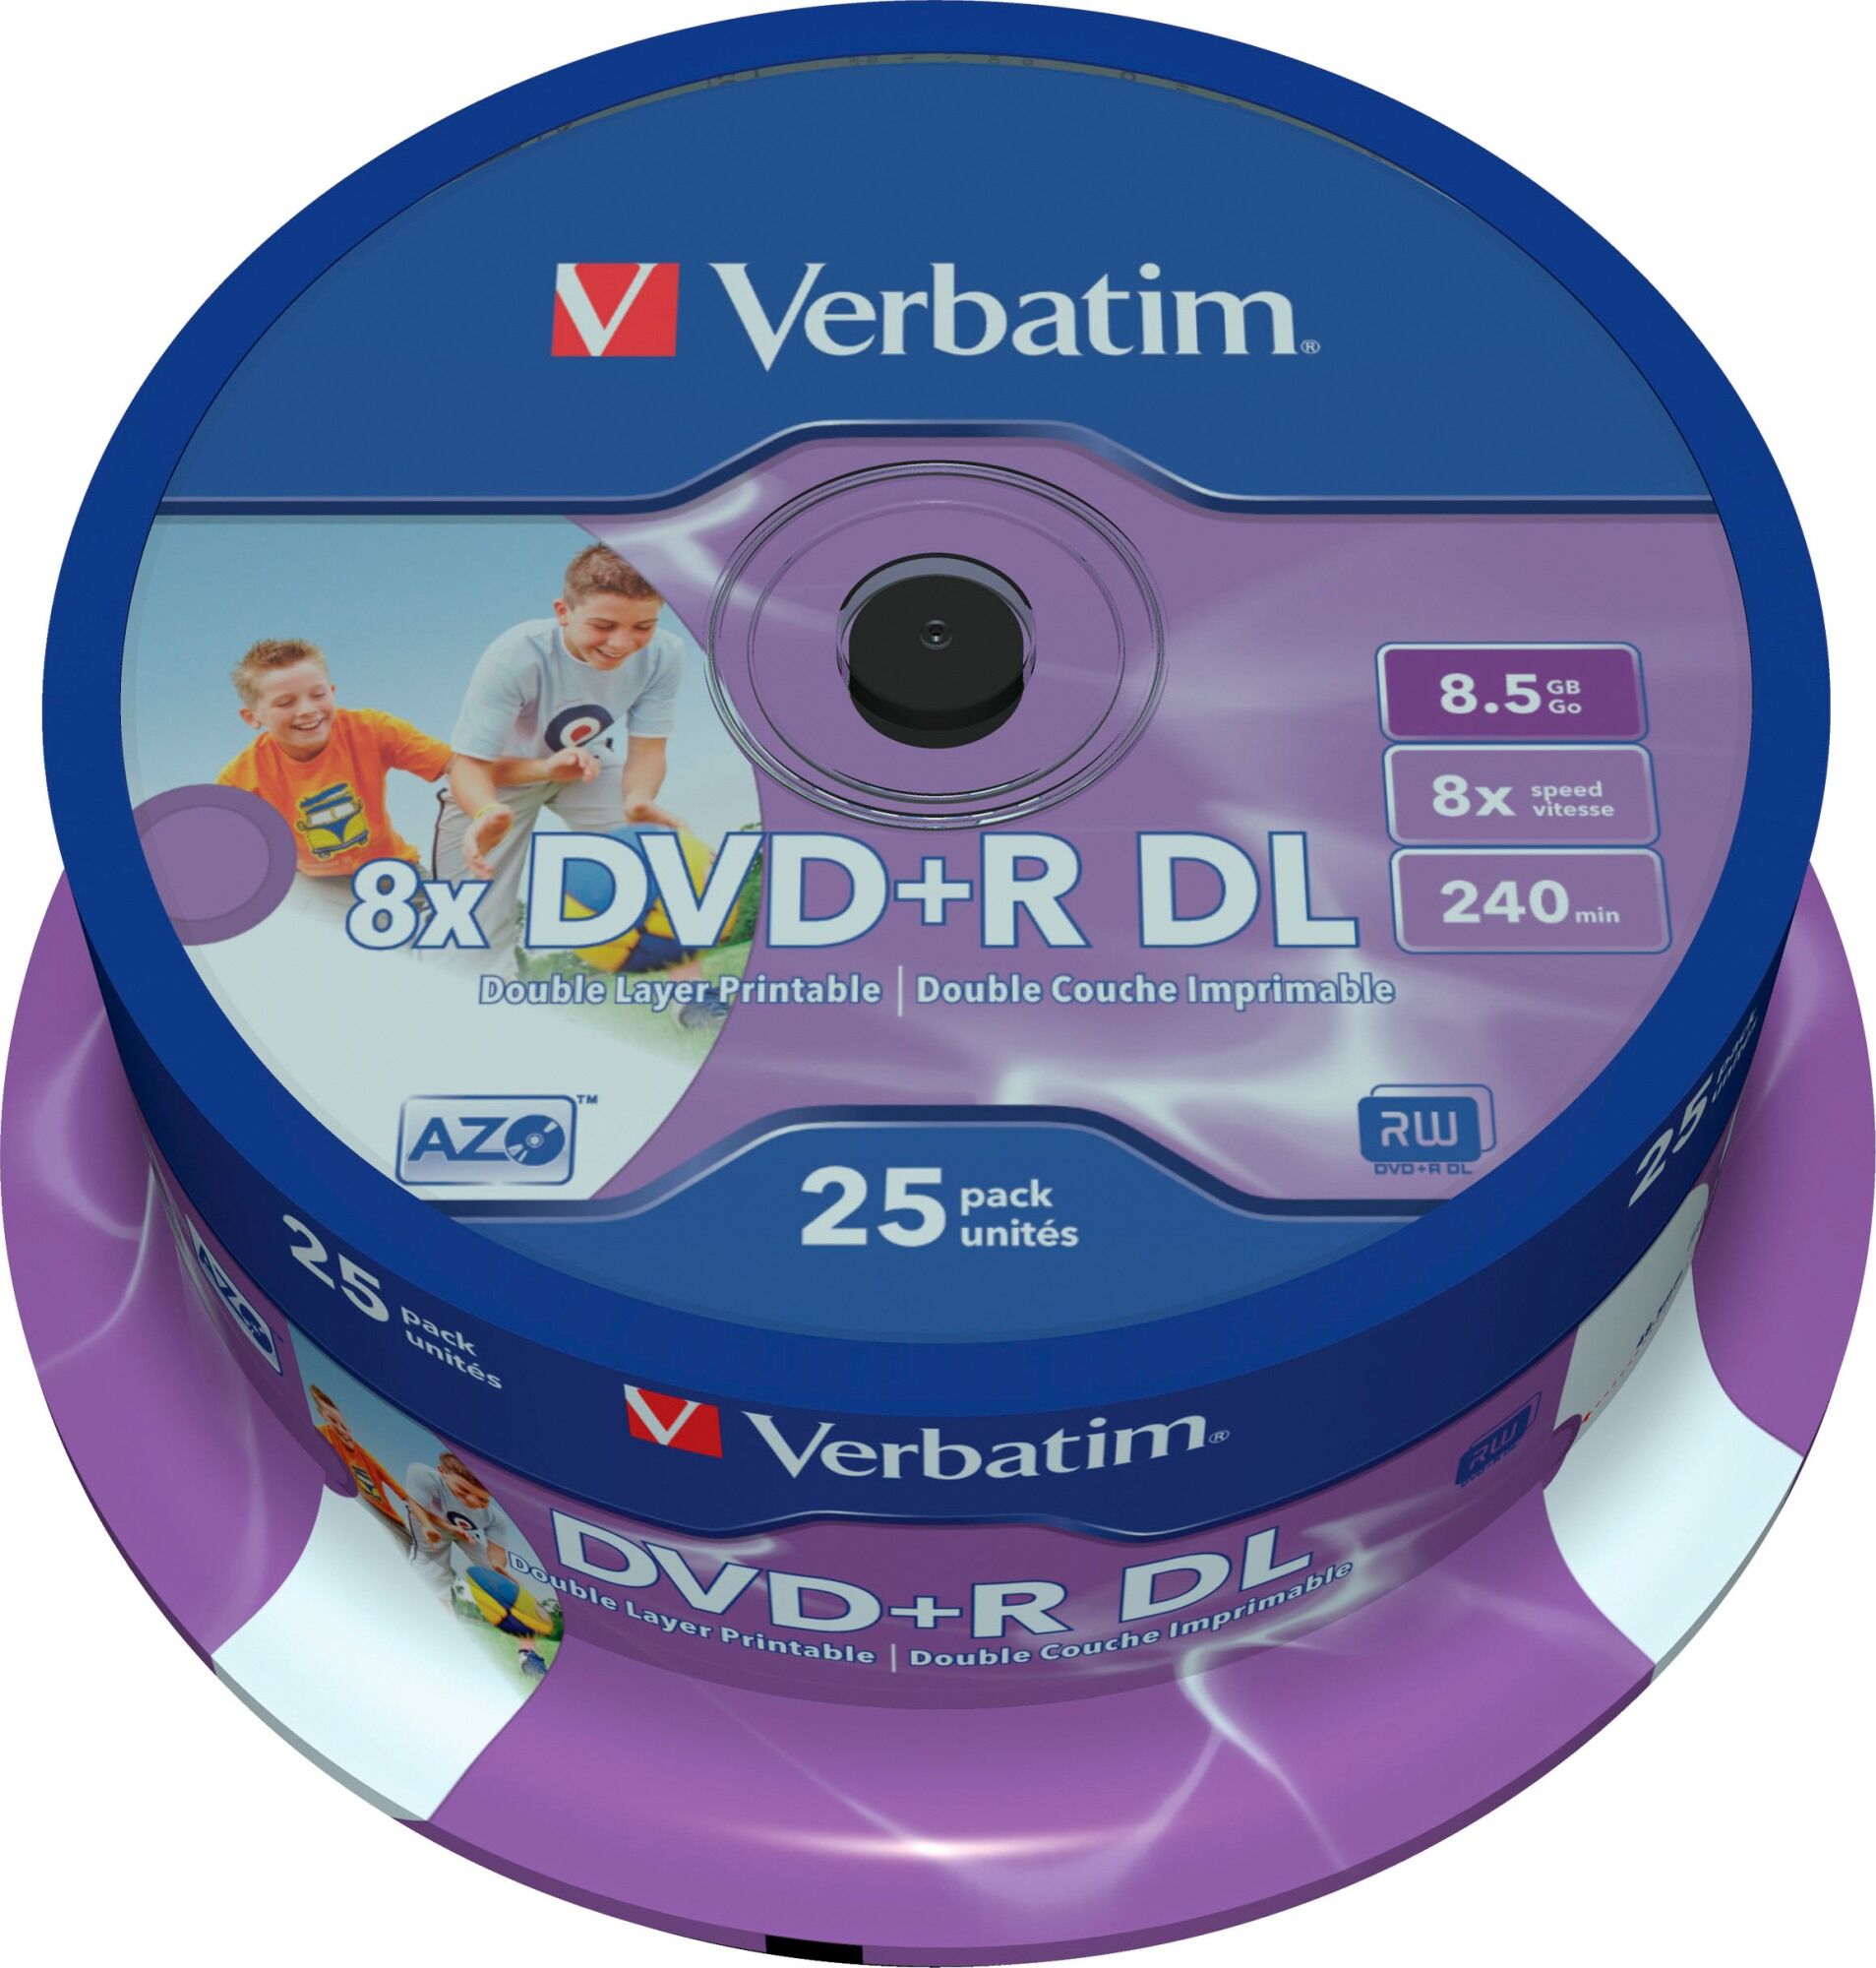 Verbatim DVD+R DL 8x 8.5 GB/240 min 25 kpl DVD+R -levy